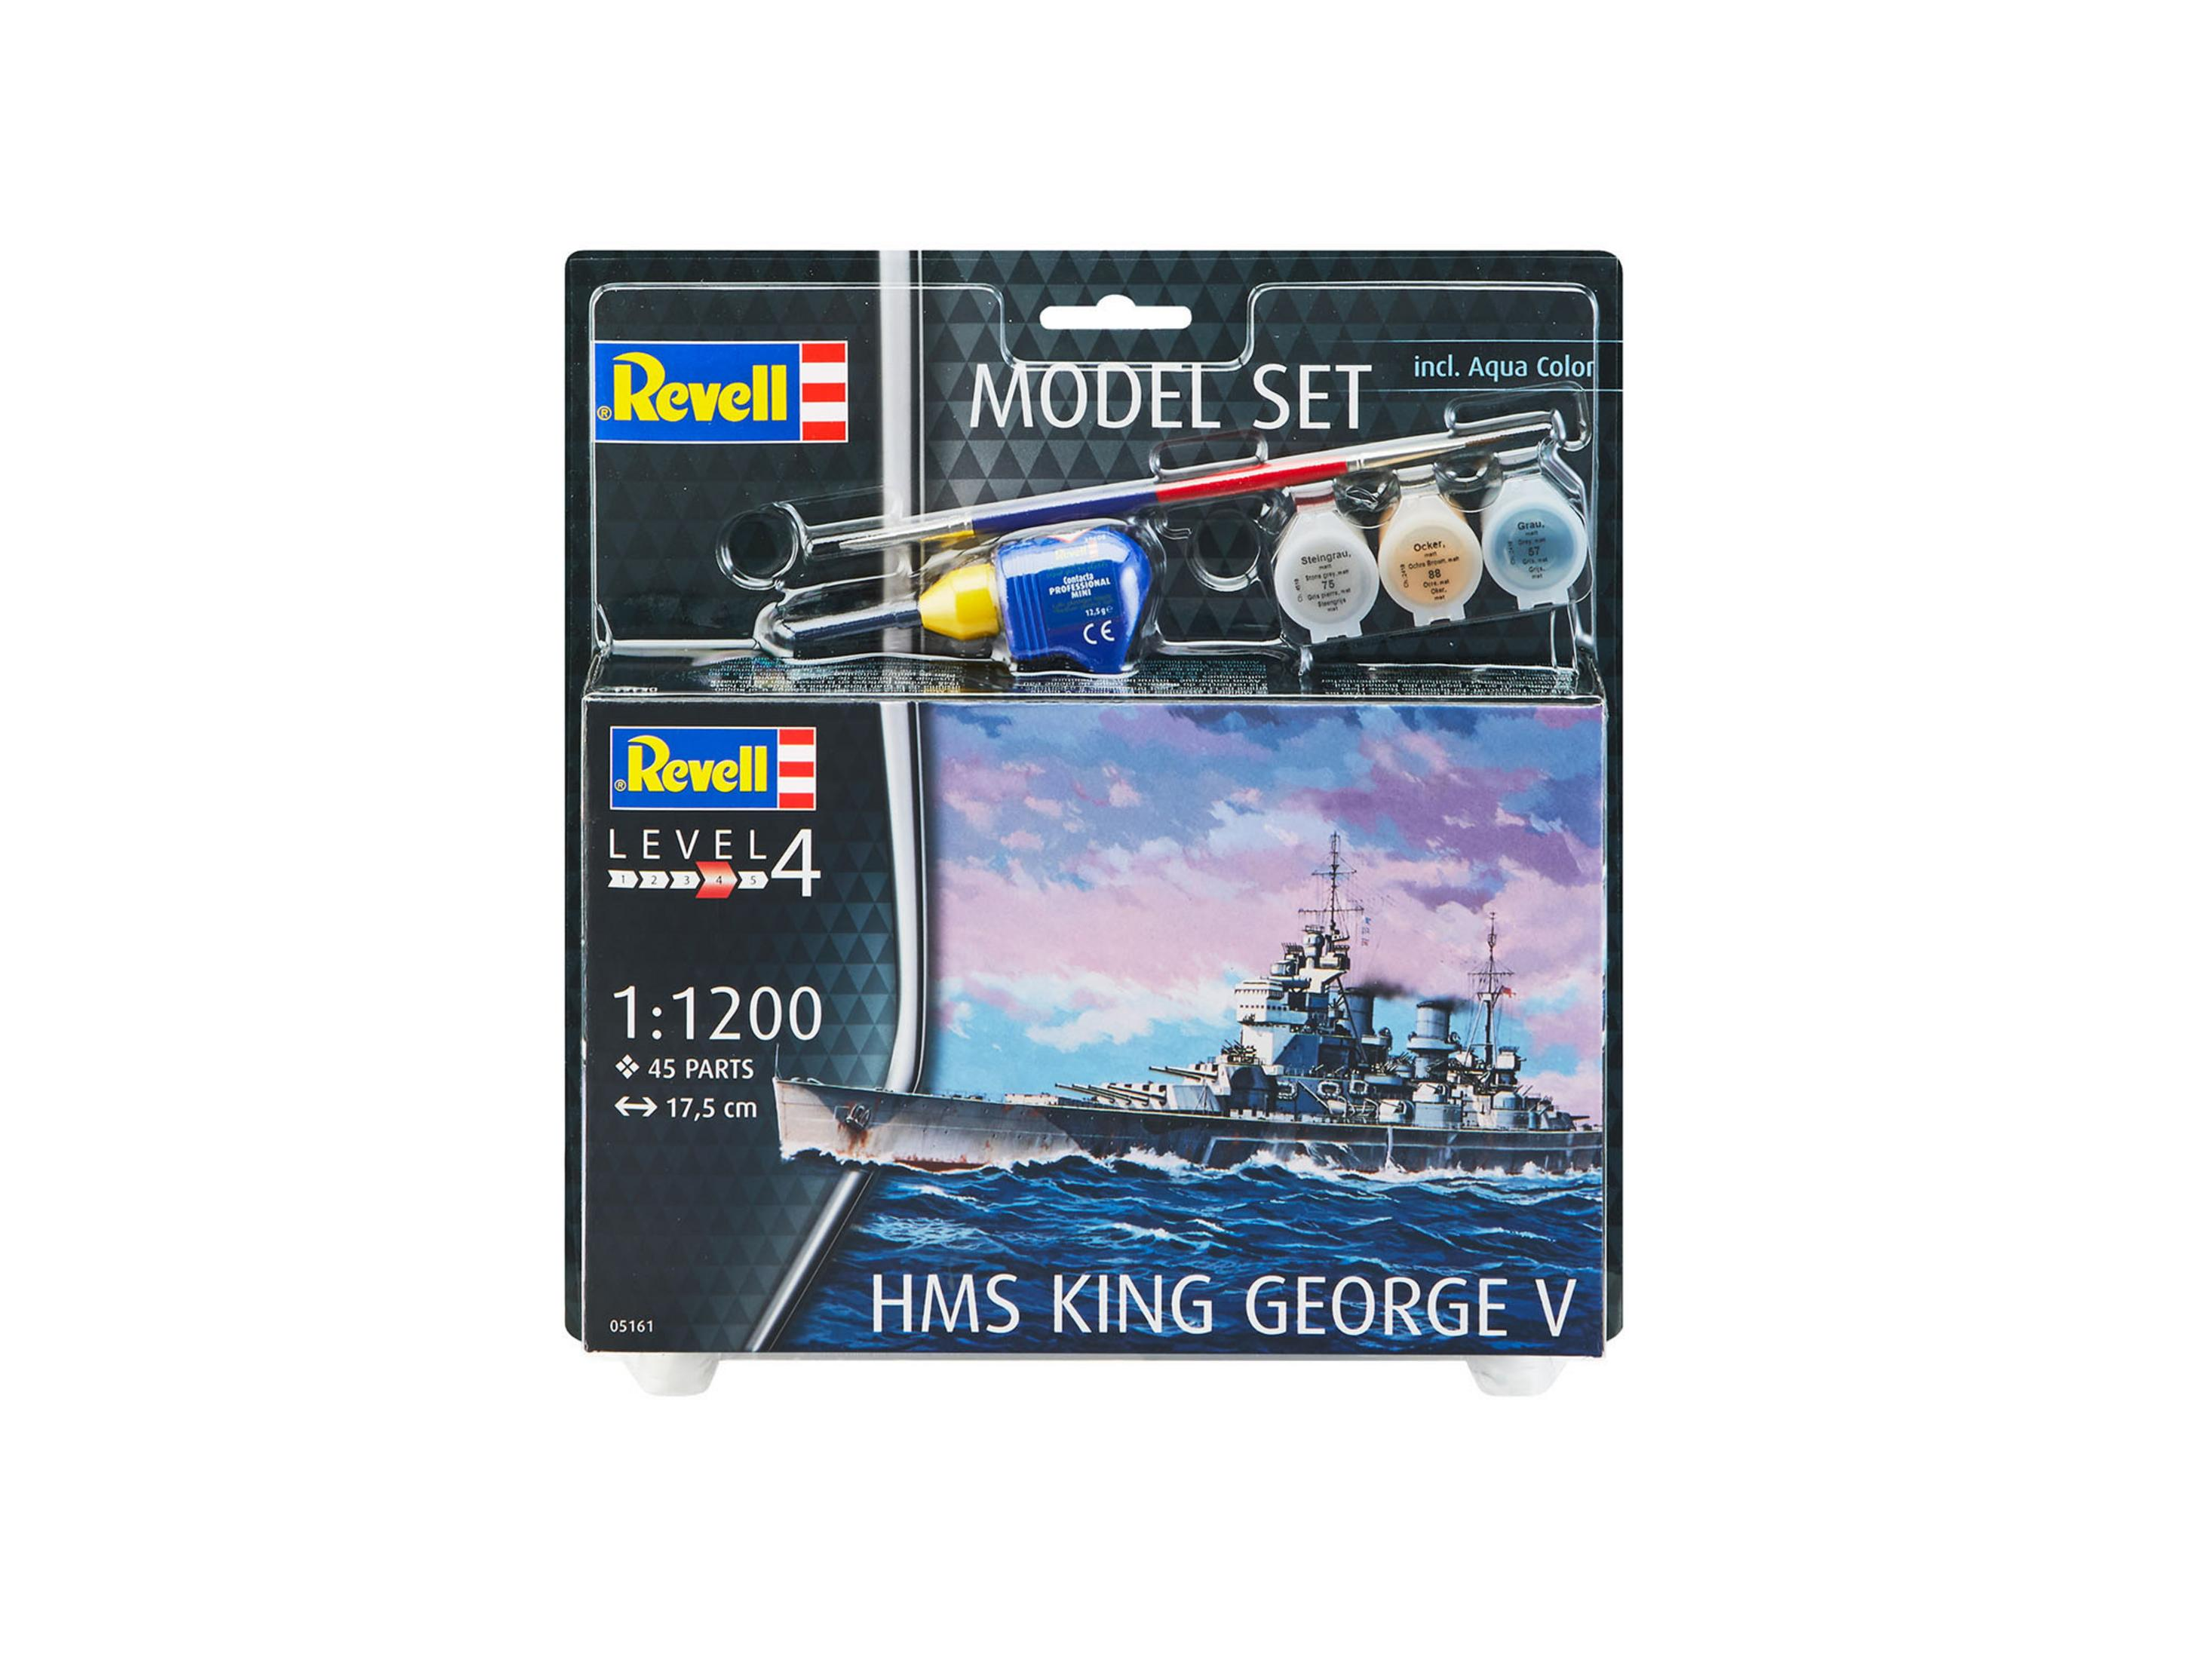 REVELL SET (NUR Bausatz, GEORGE ONLINE) Mehrfarbig KING 65161 V HMS MODEL